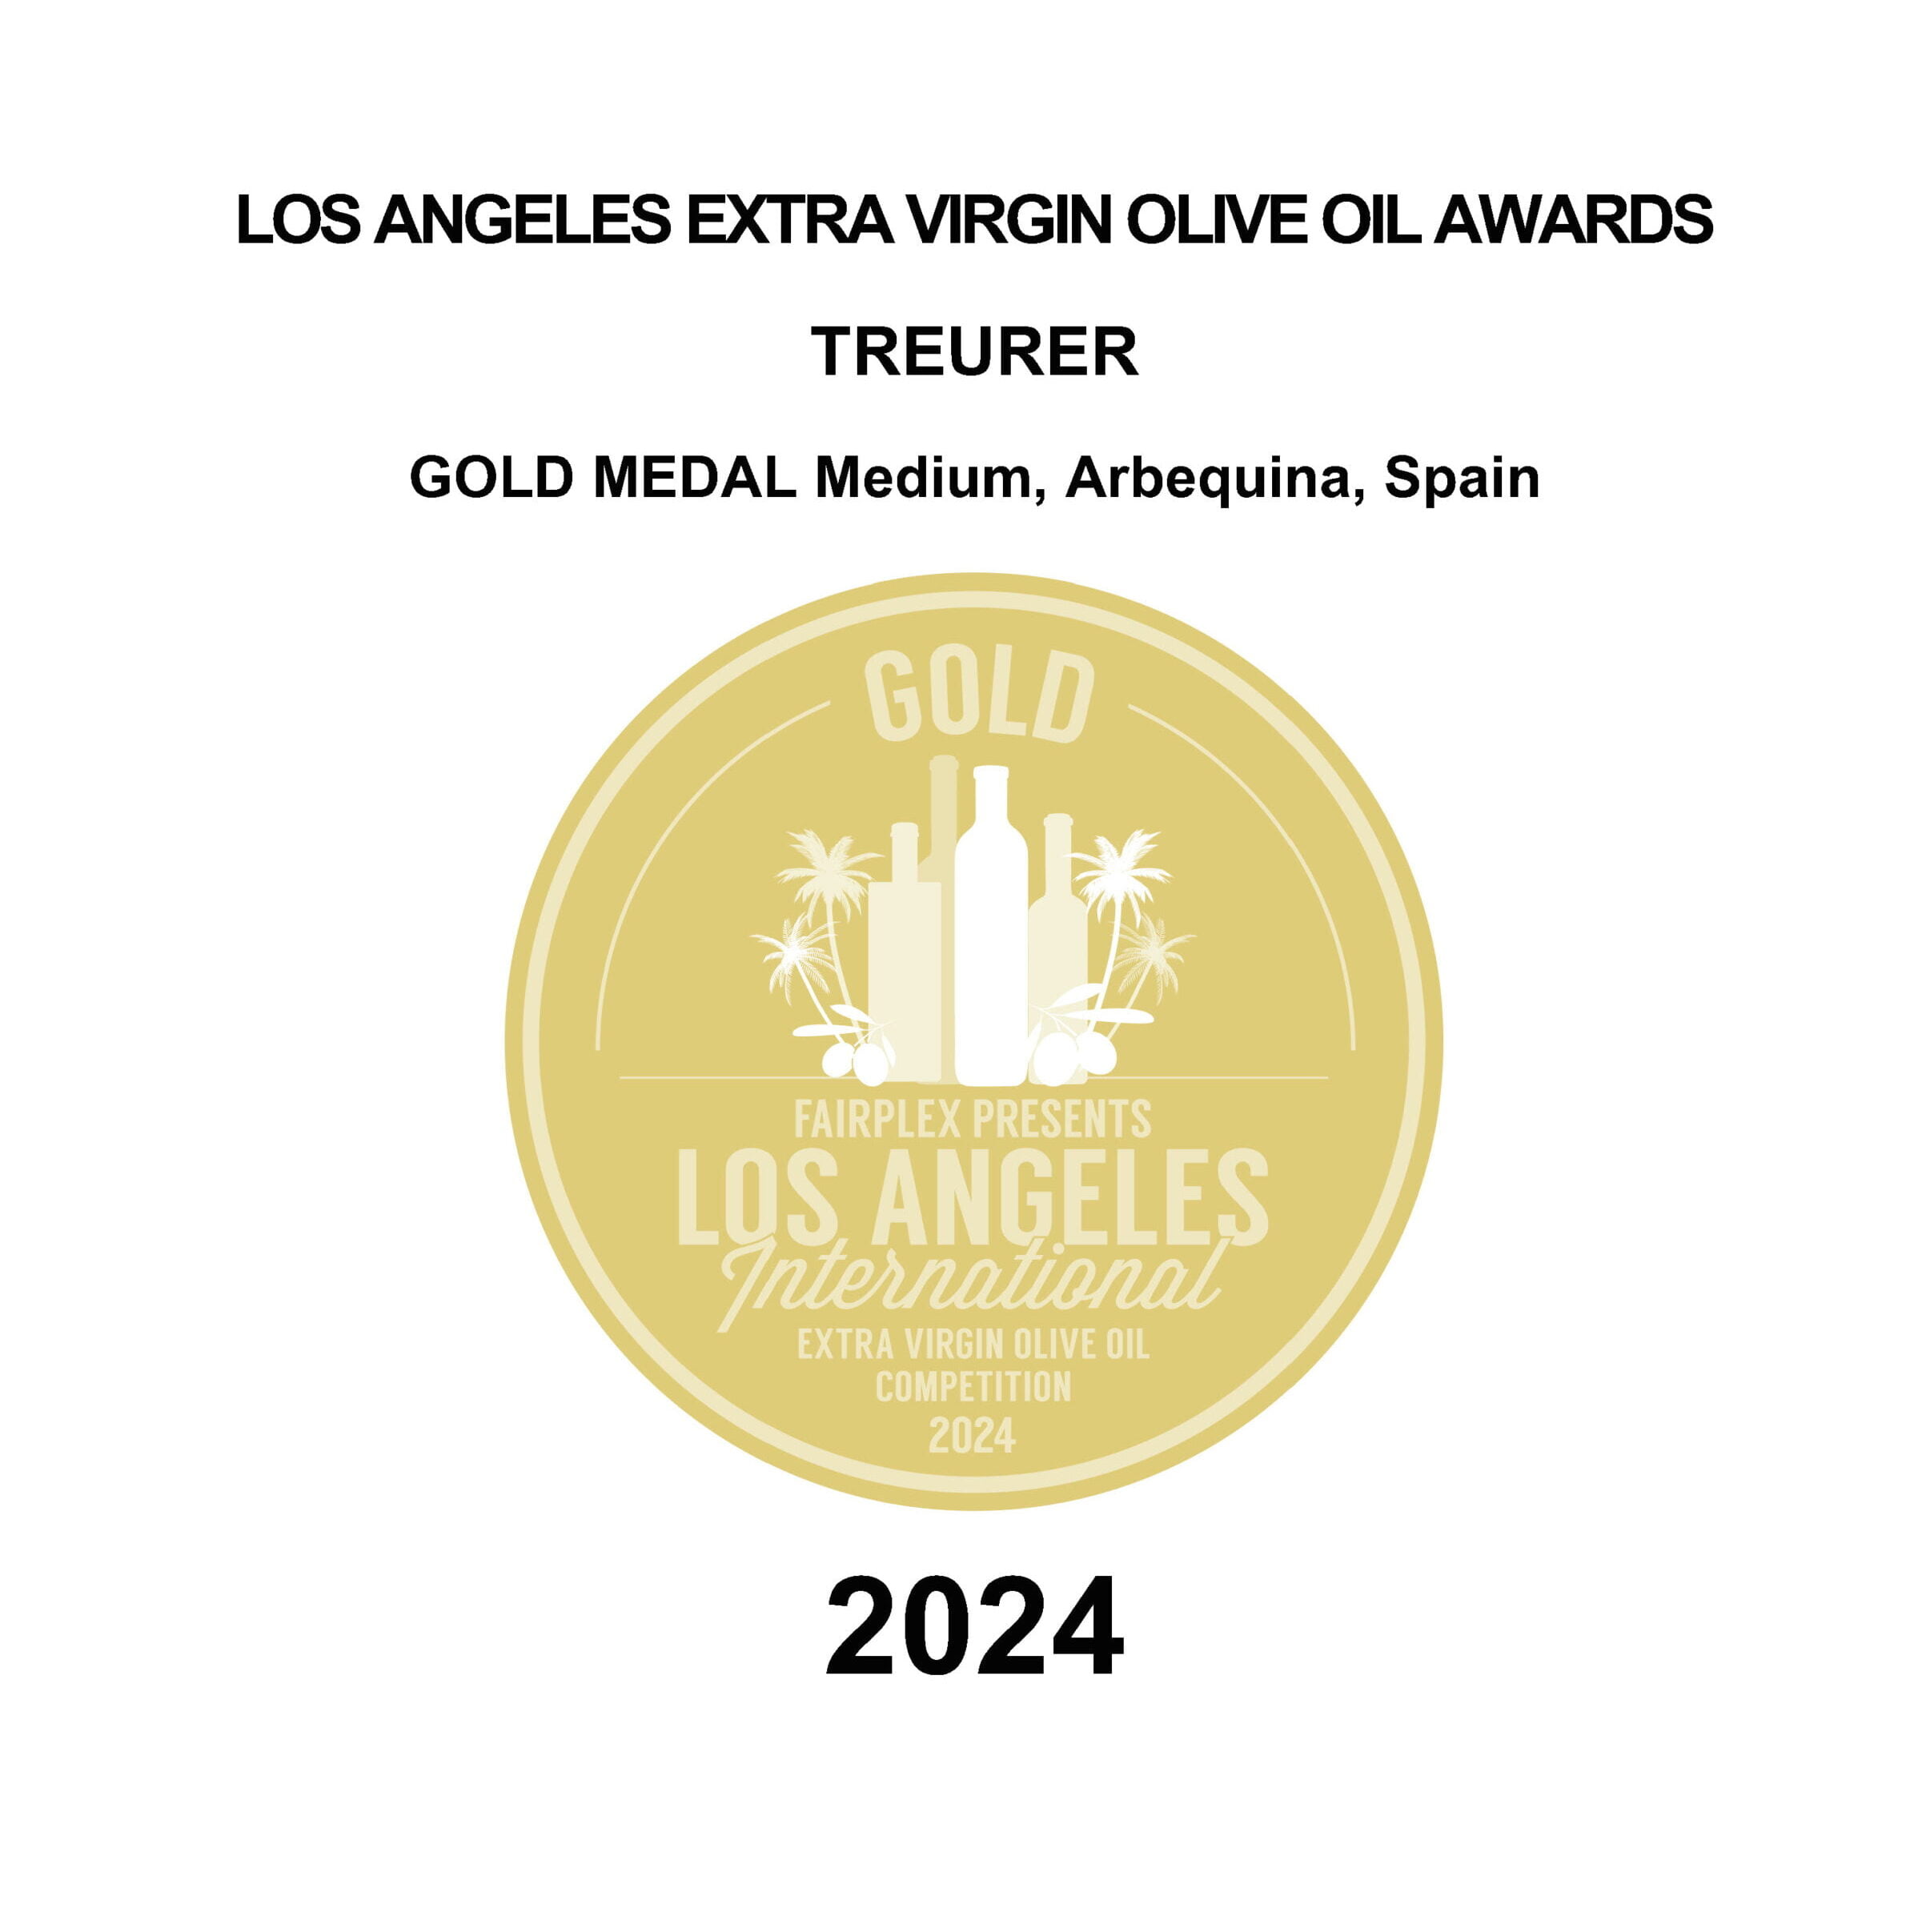 Oli Treurer, Medalla de oro en Los Angeles Extra Virgin Olive Oil Awards 2024